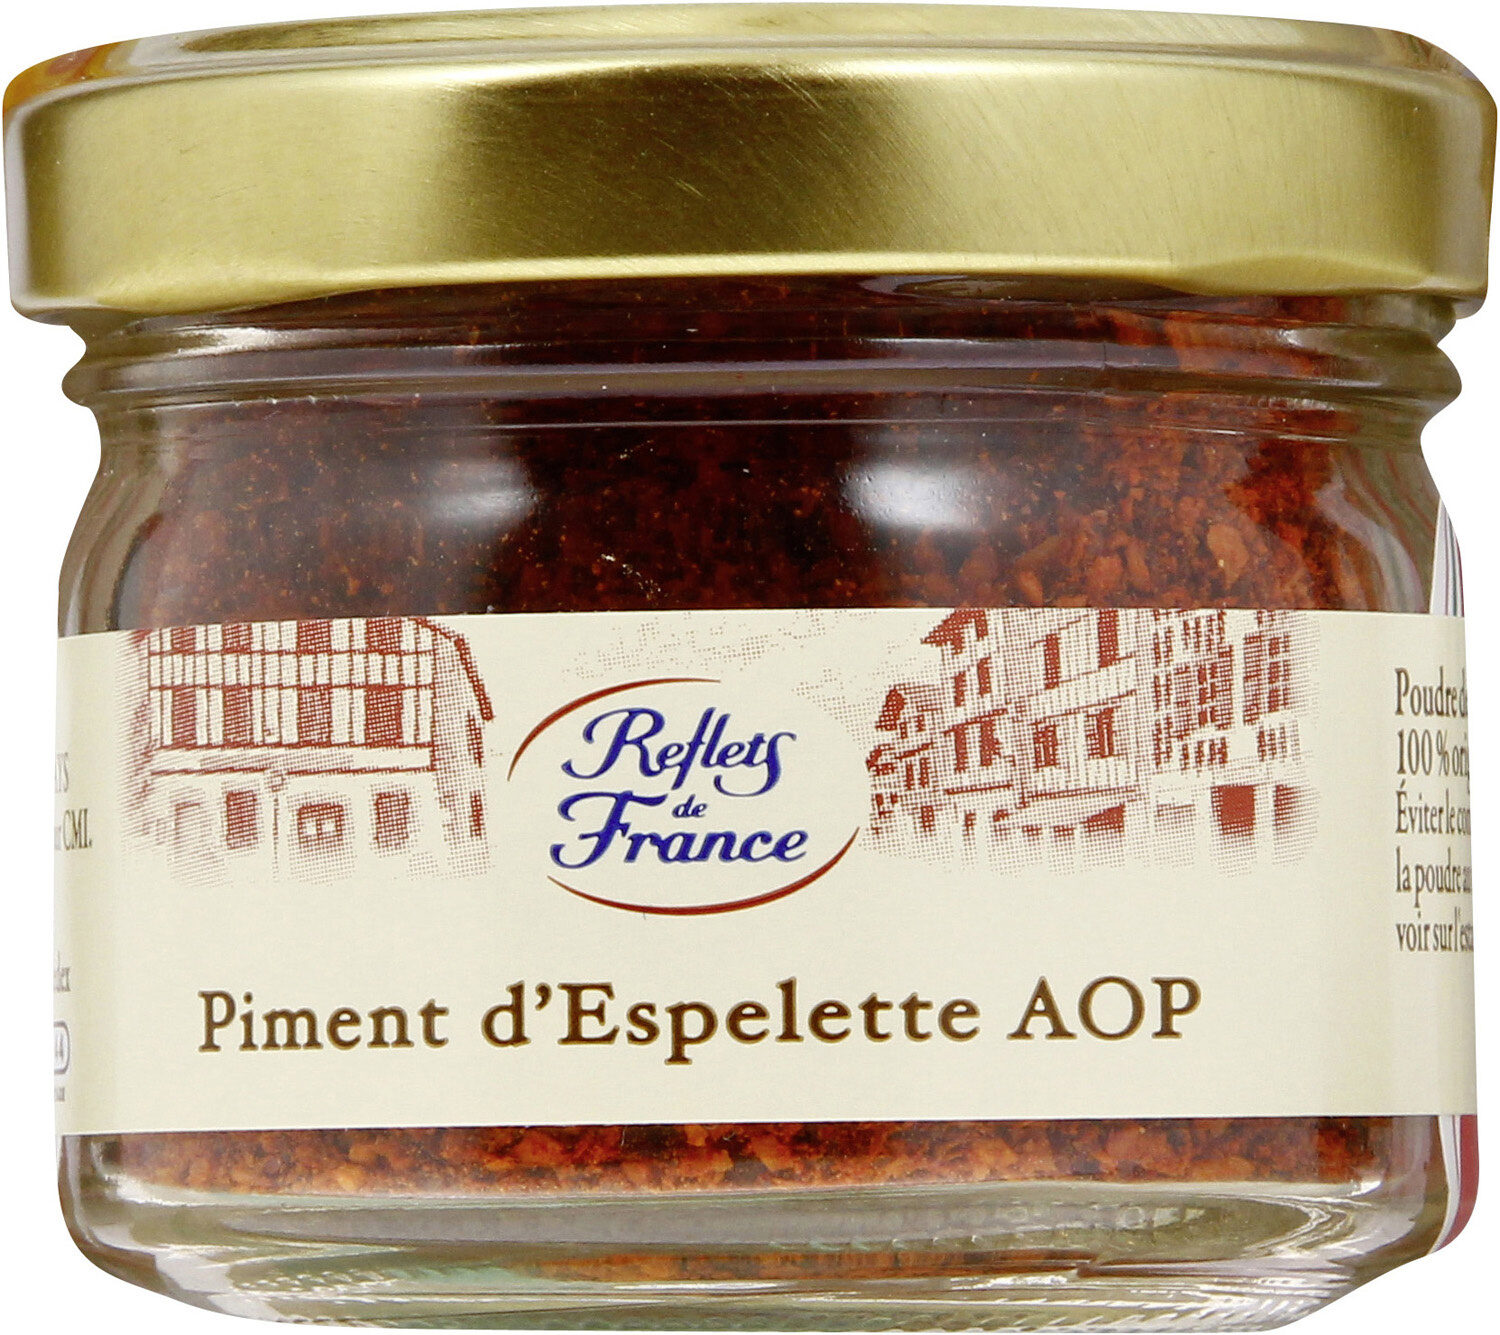 Piment d'Espelette AOP - Producto - fr